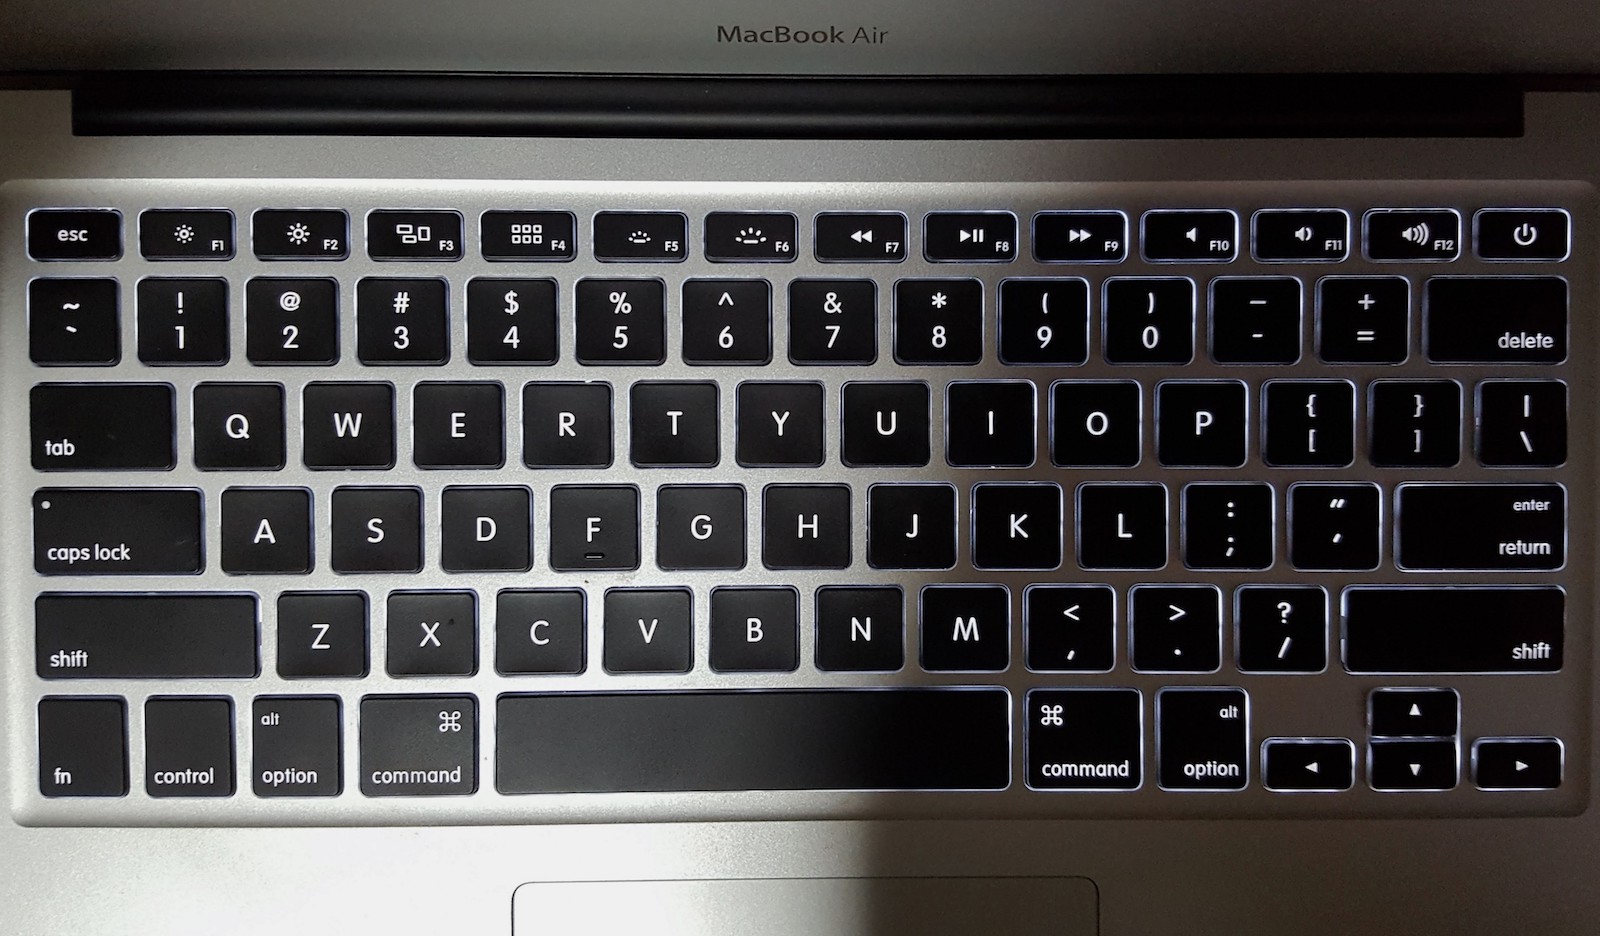 Figura 6: Teclado do Macbook Air, com o layout contemporâneo da Apple presente inclusive em teclados de mesa.